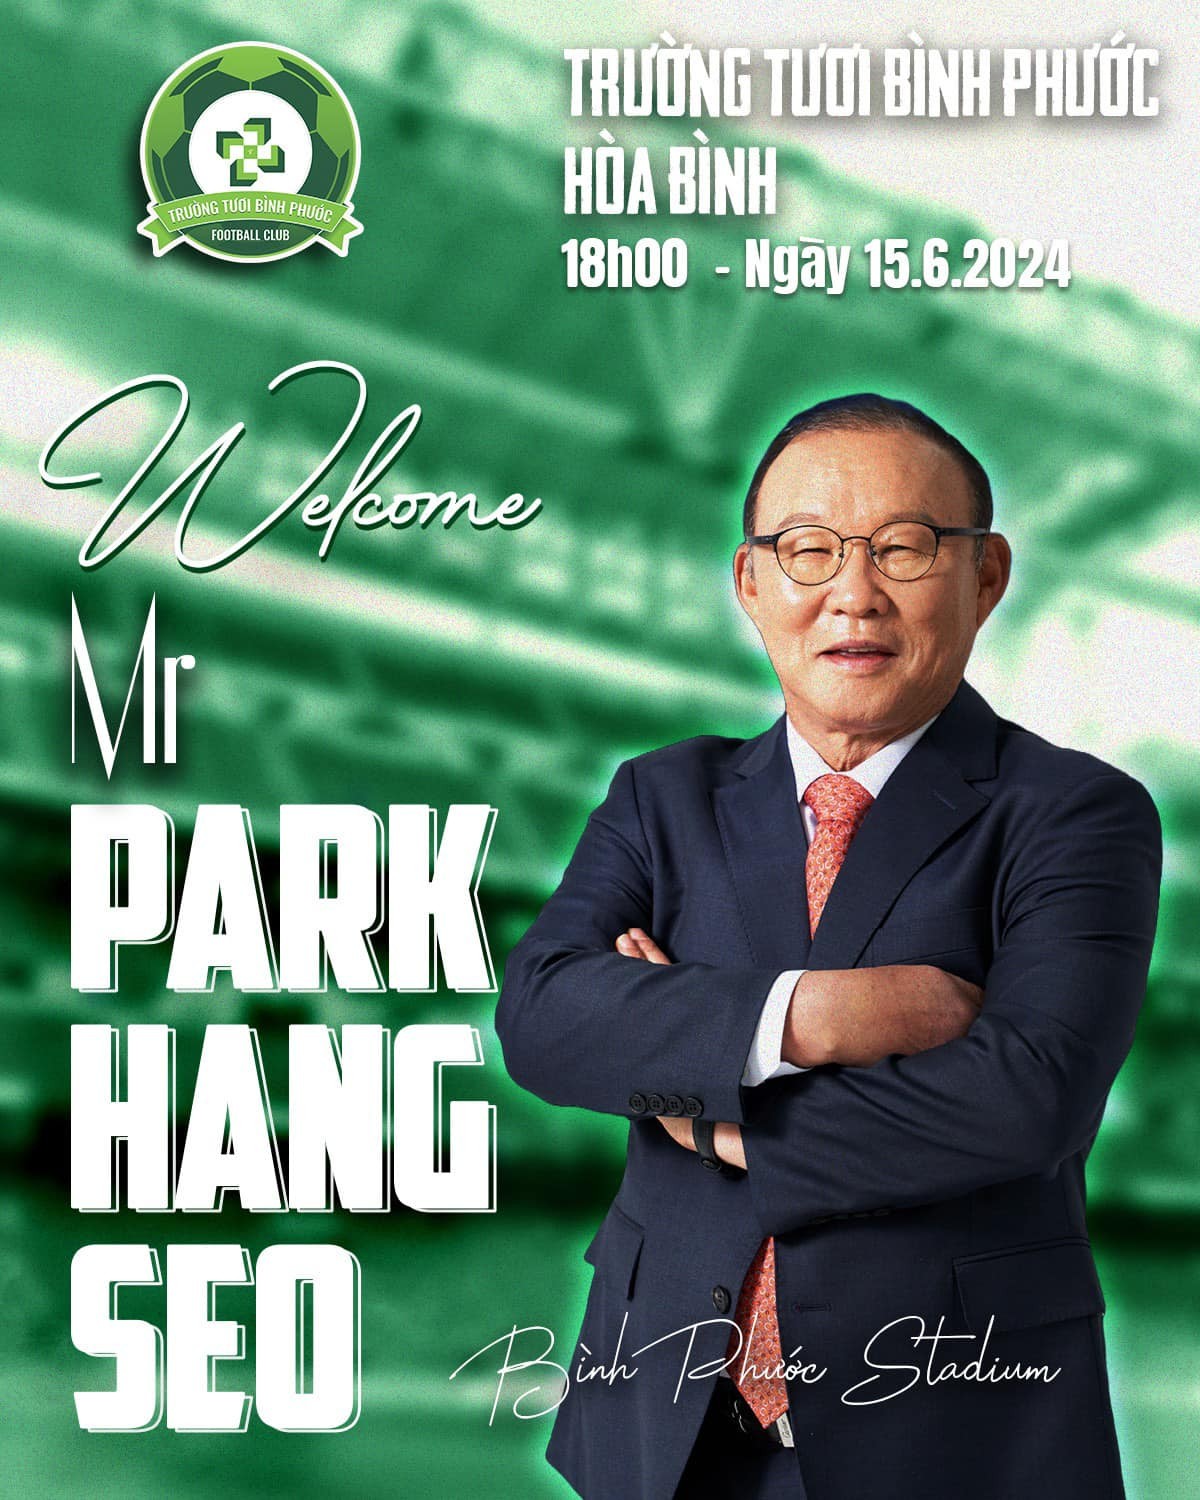 HLV Park Hang Seo tới dự khán trận đấu của CLB Bình Phước